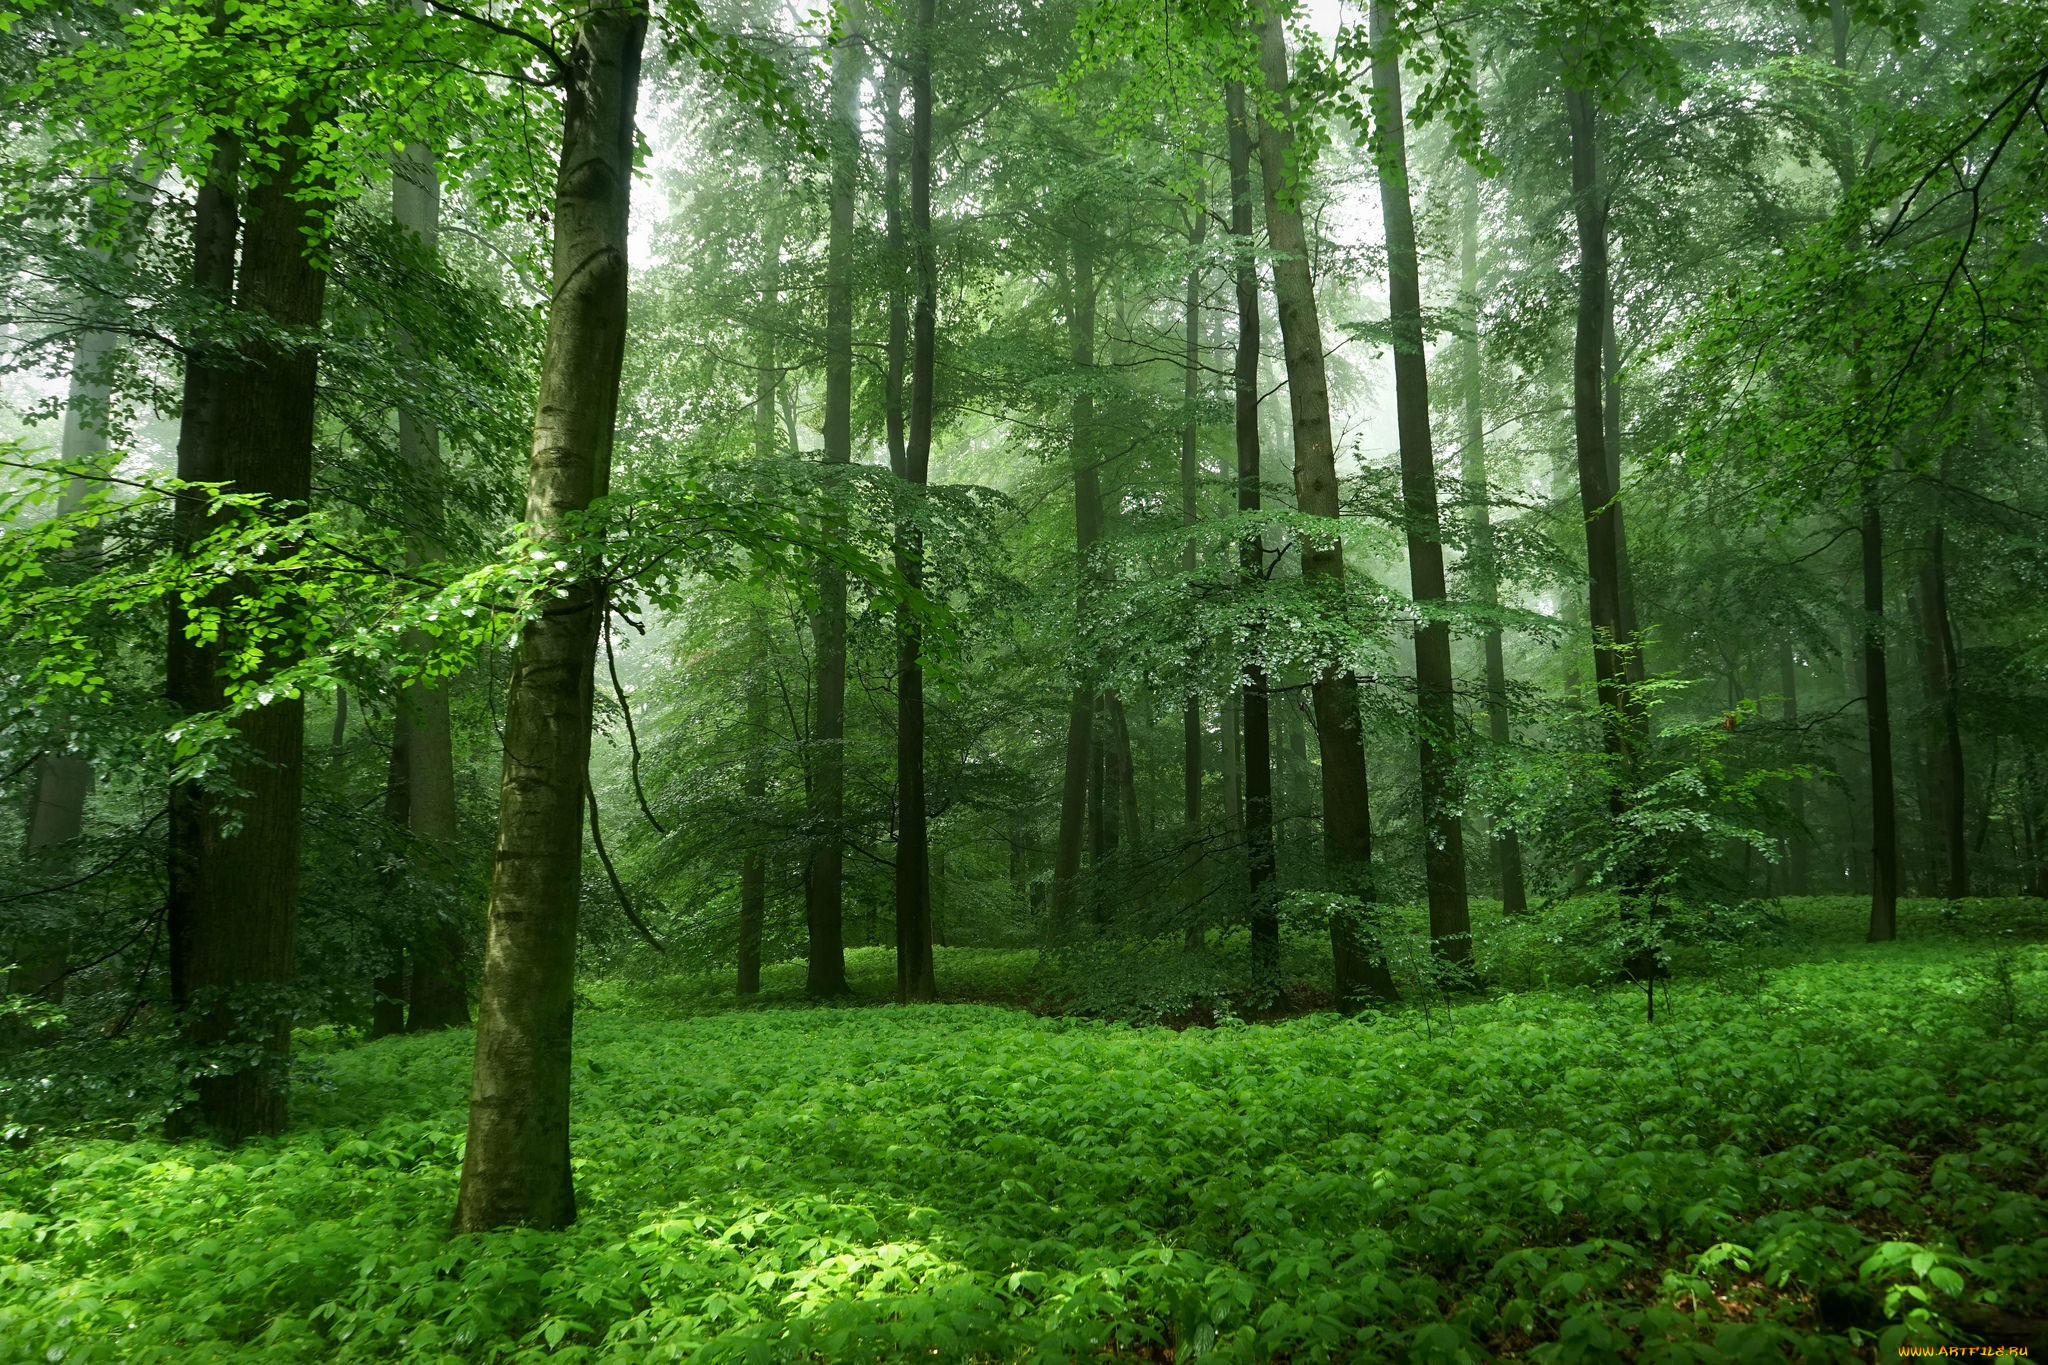 Картинка леса. Природа лес. Зеленый лес. Деревья в лесу.